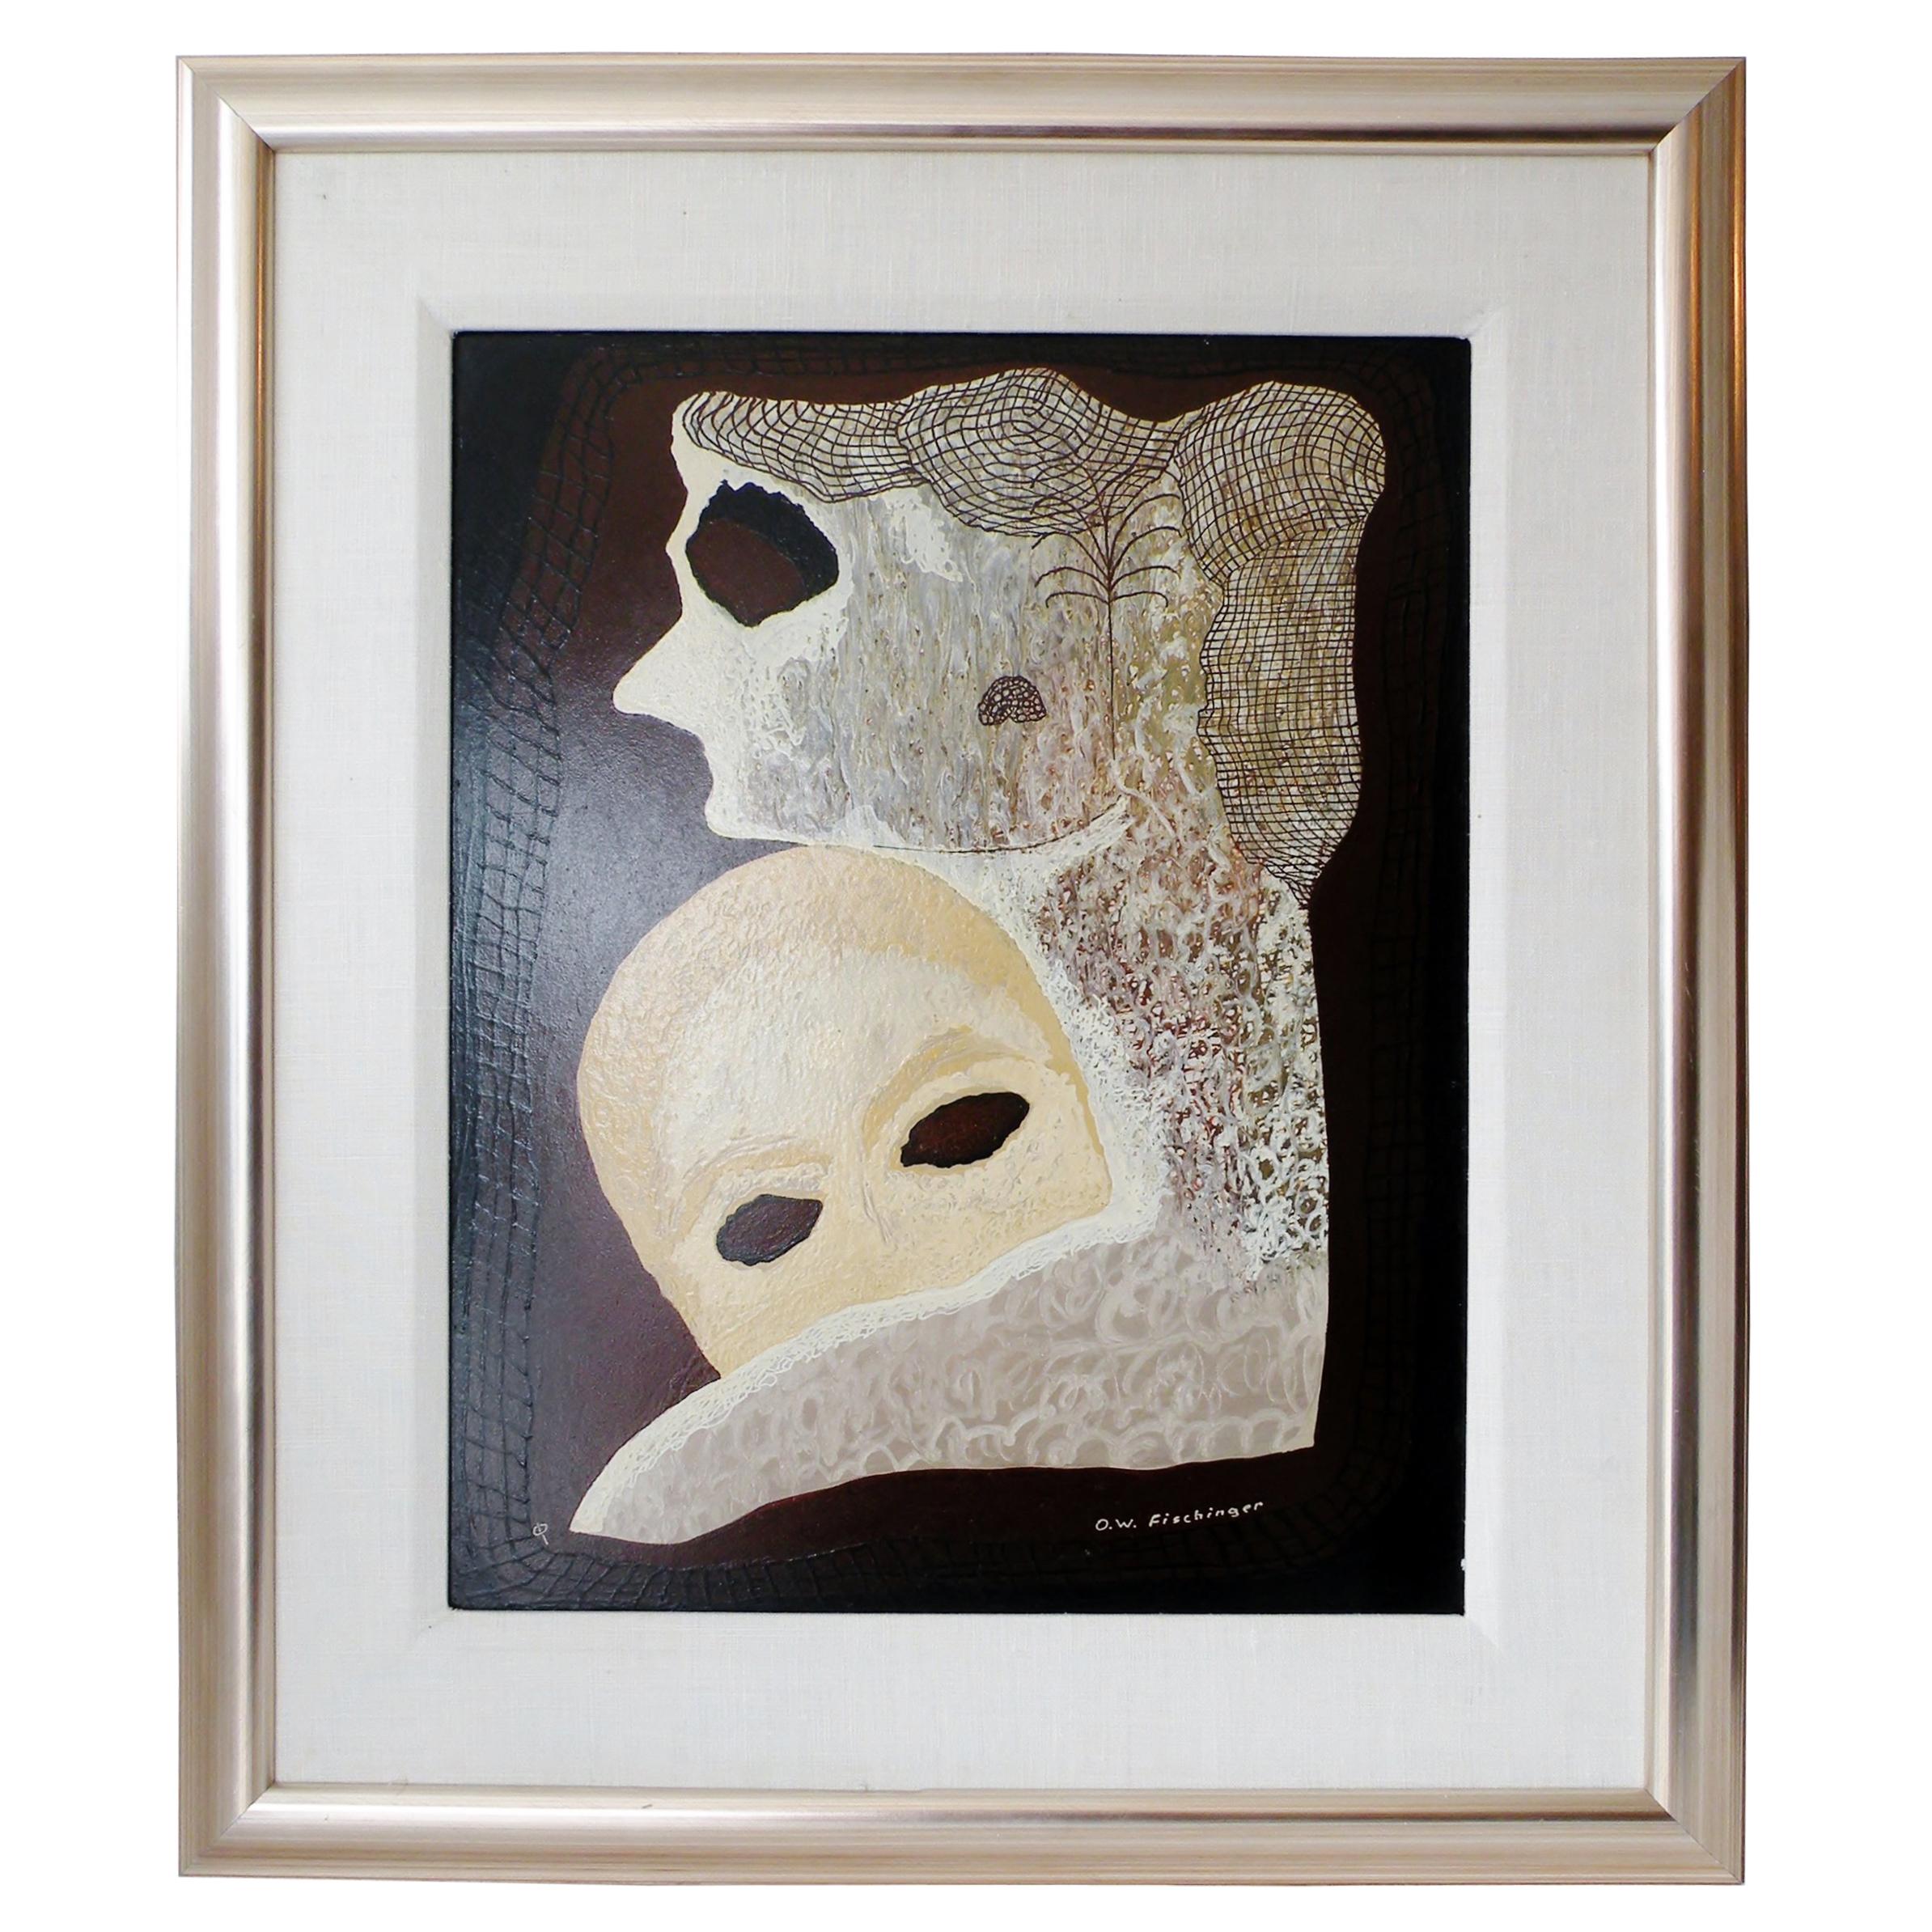 Oskar Fischinger Surrealism Painting Titled "Two Masks" 1956 For Sale